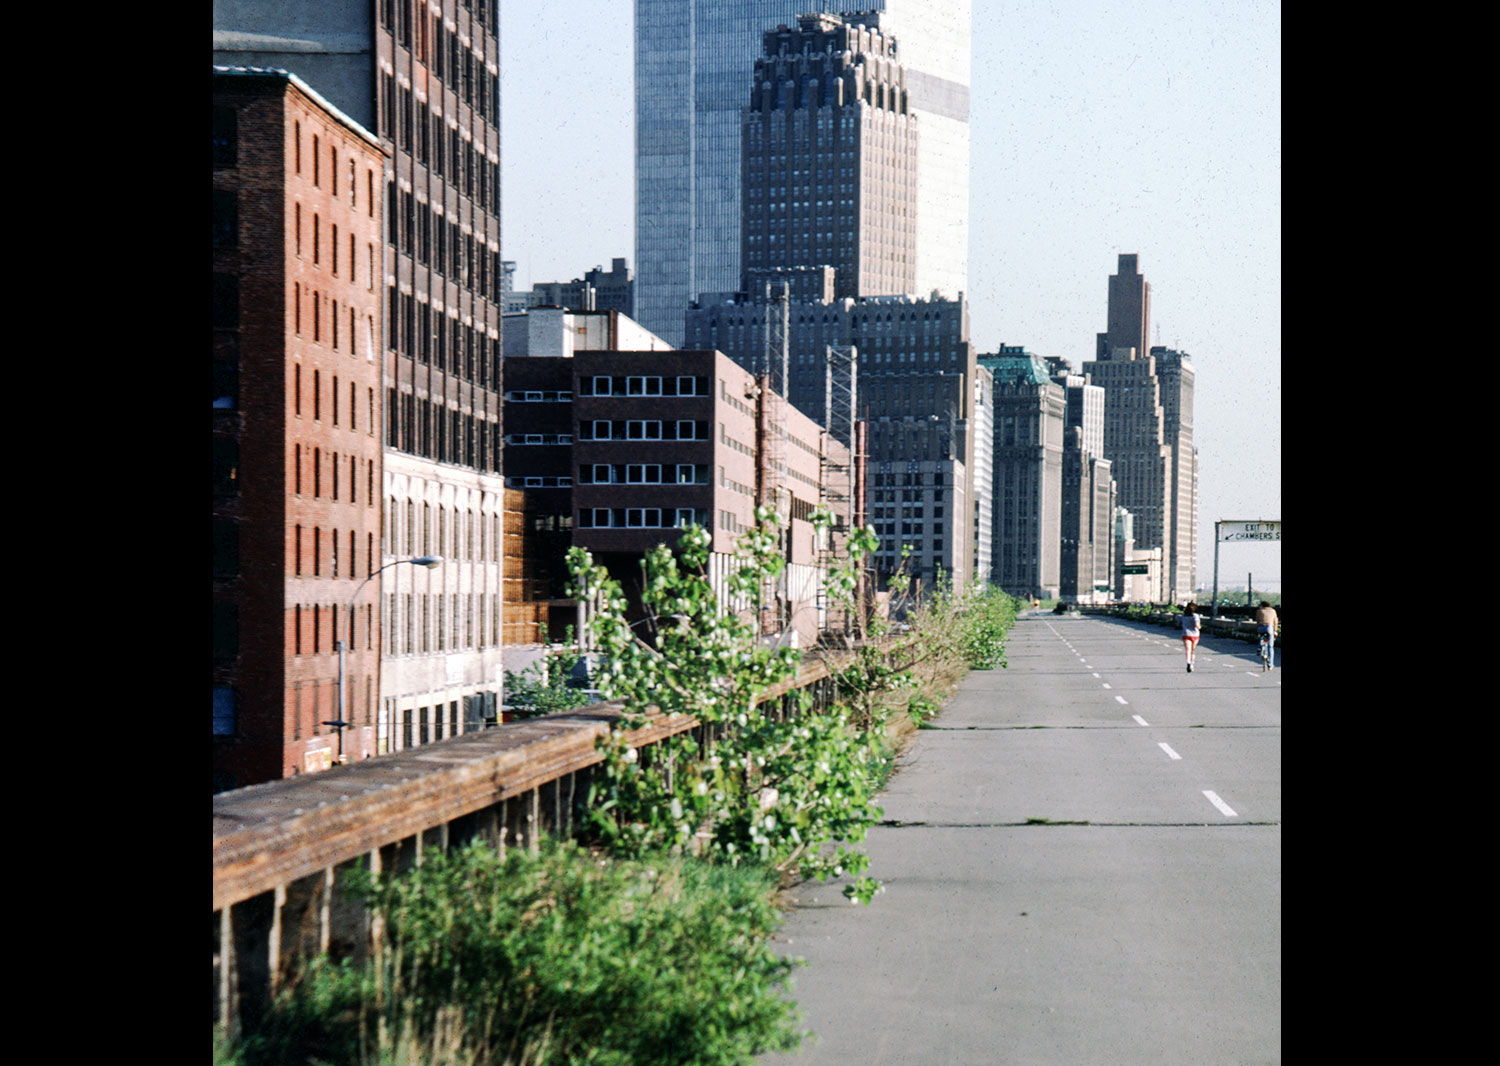 Elevated West Side (Miller) Highway 1980